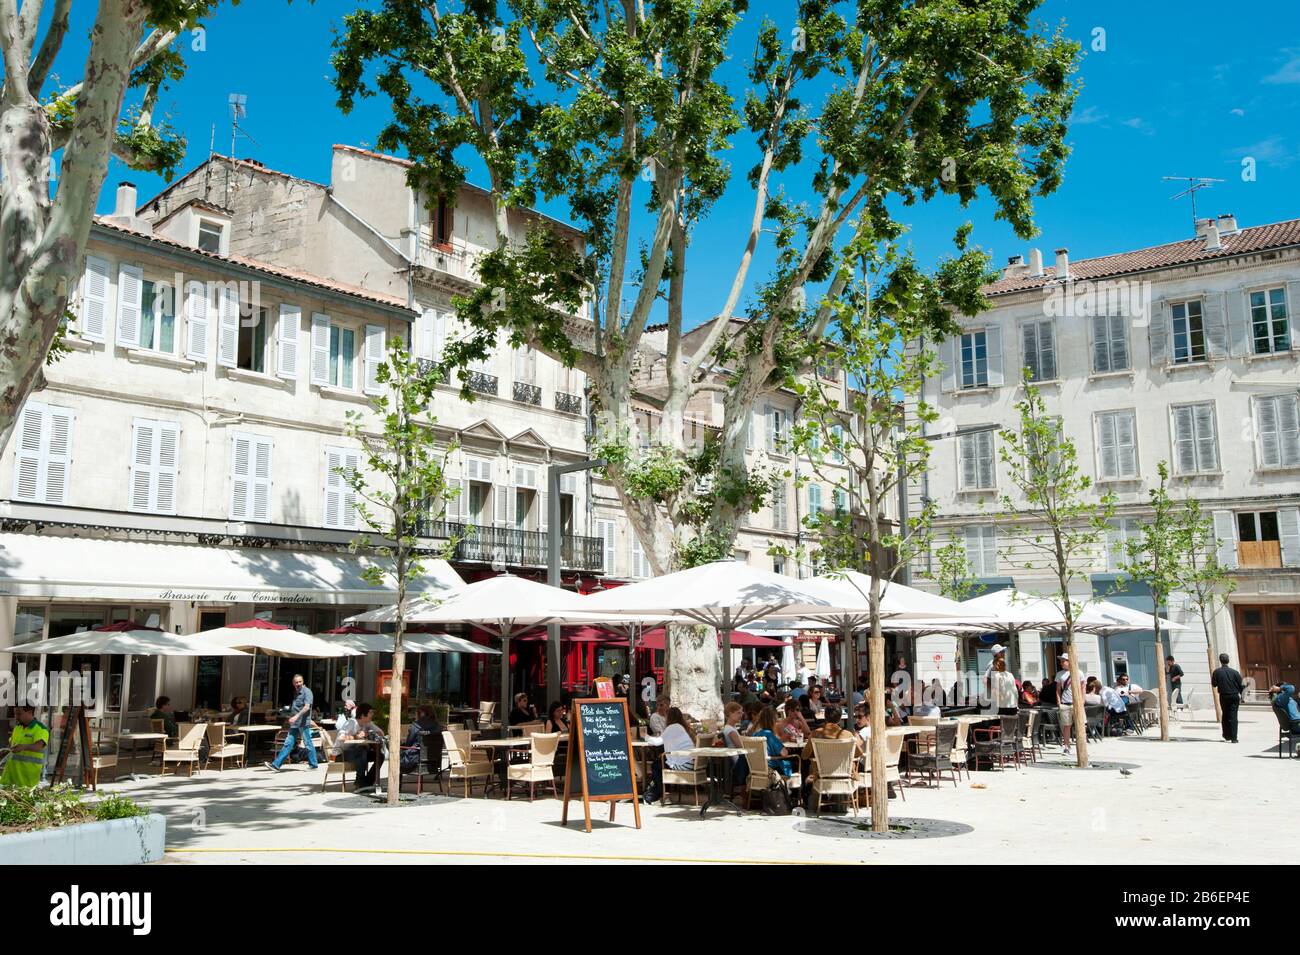 Tourists at a sidewalk cafe, Place Saint-Jean le Vieux, Avignon, Vaucluse, Provence-Alpes-Cote d'Azur, France Stock Photo